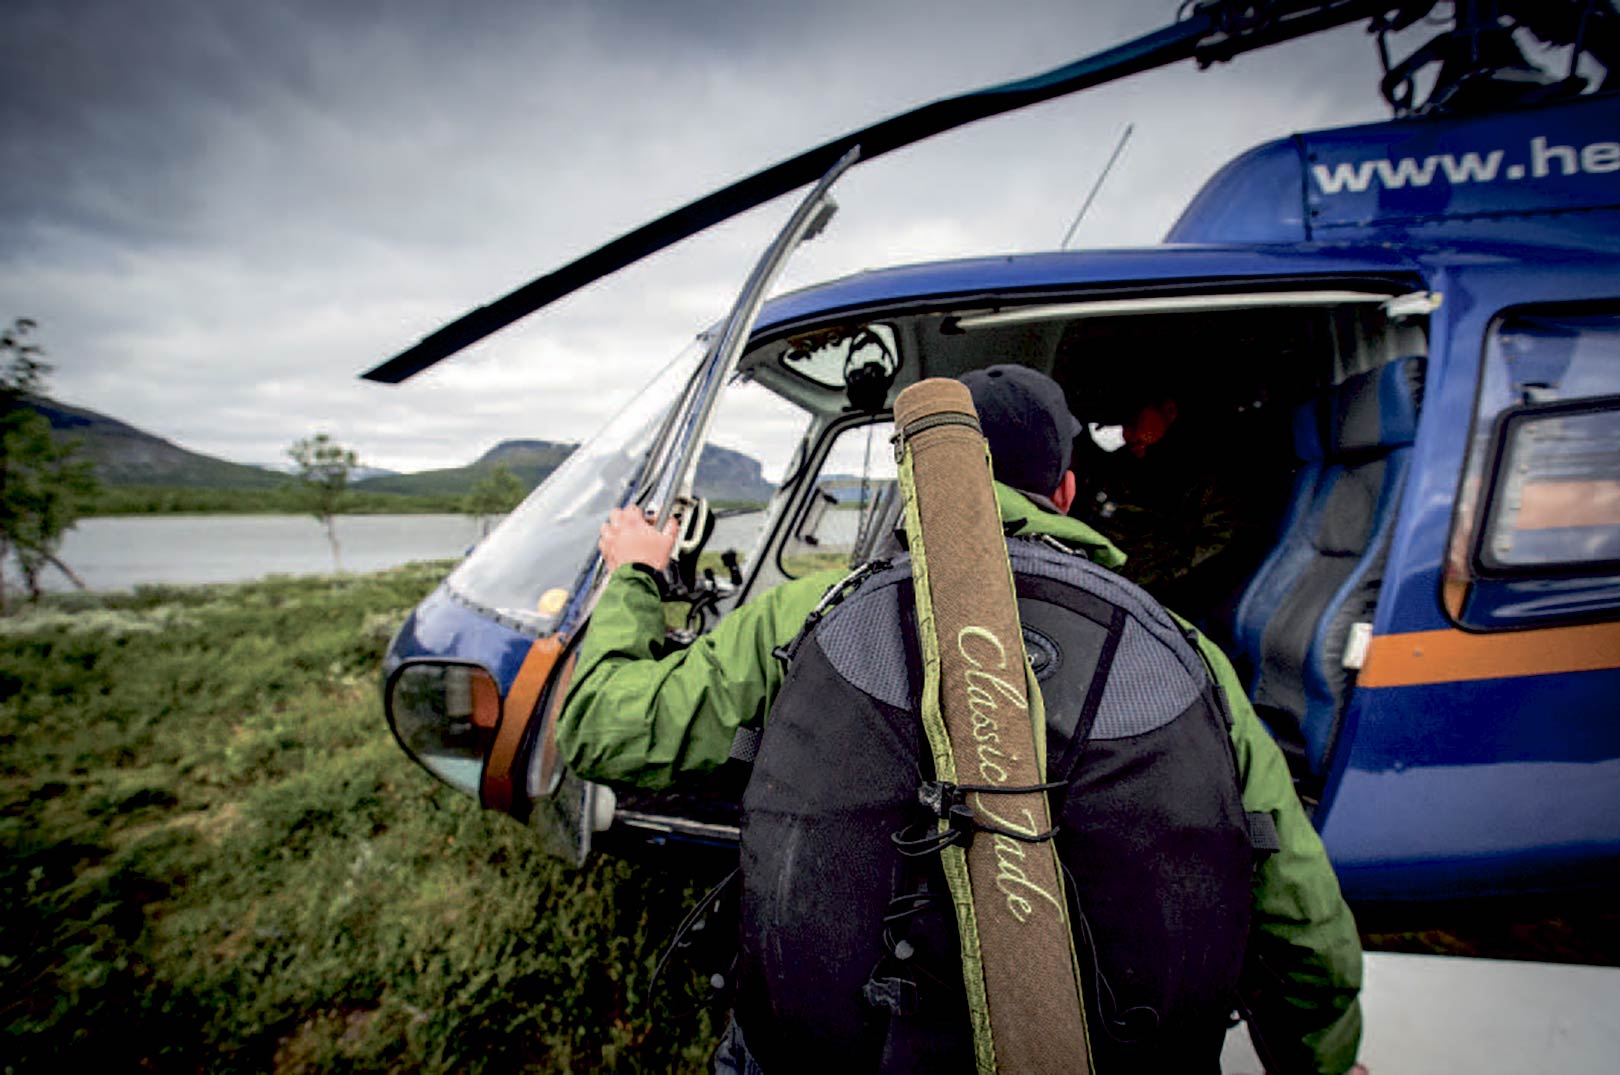 Arctic Helis helikoptere er den eneste hurtige vej frem i det øde landskab.